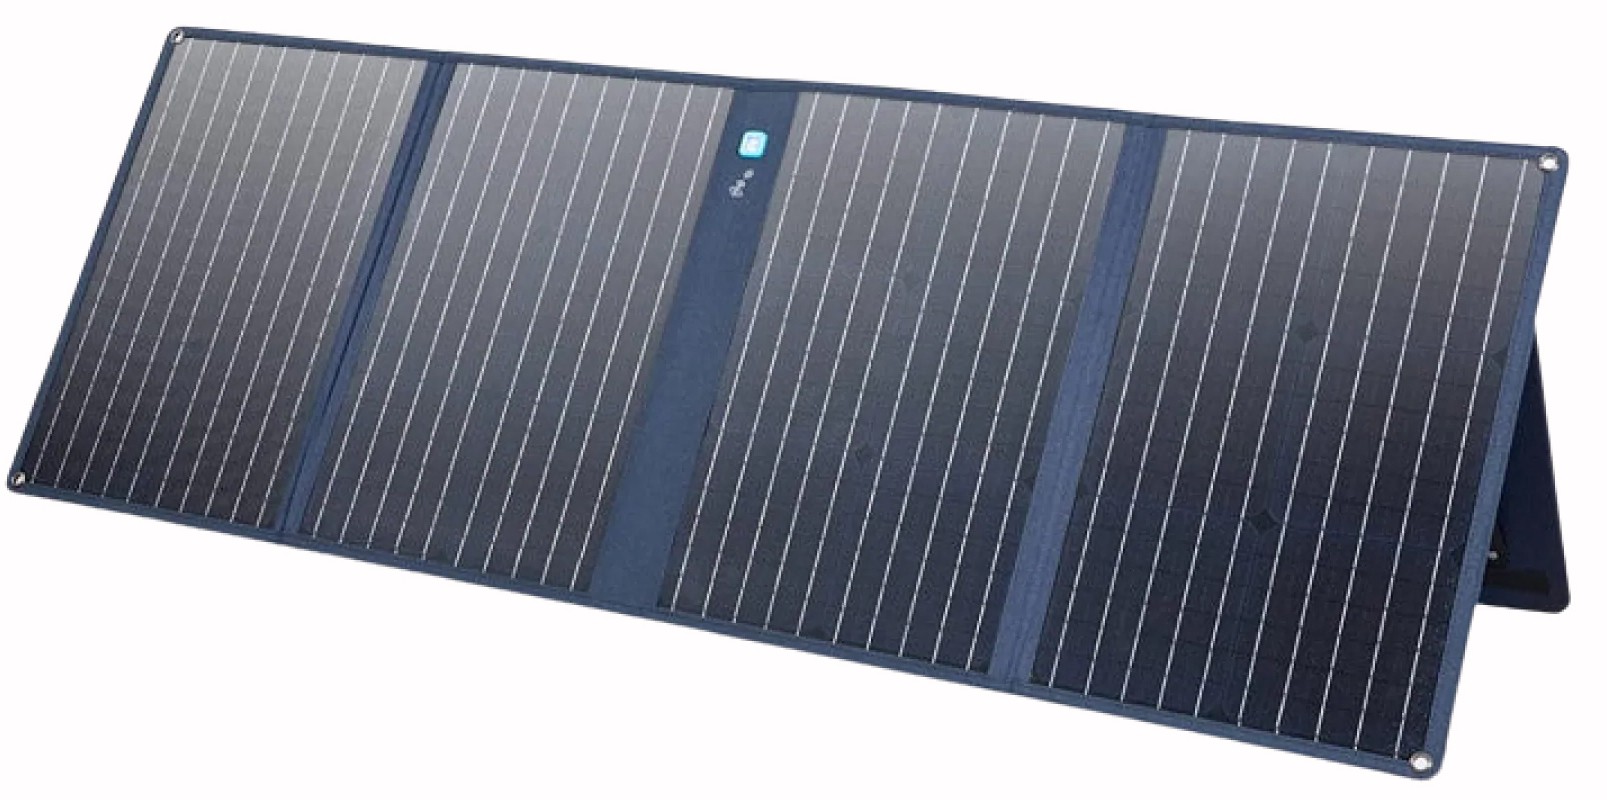 Цена солнечная панель Anker 625 Solar Panel 100W в Киеве